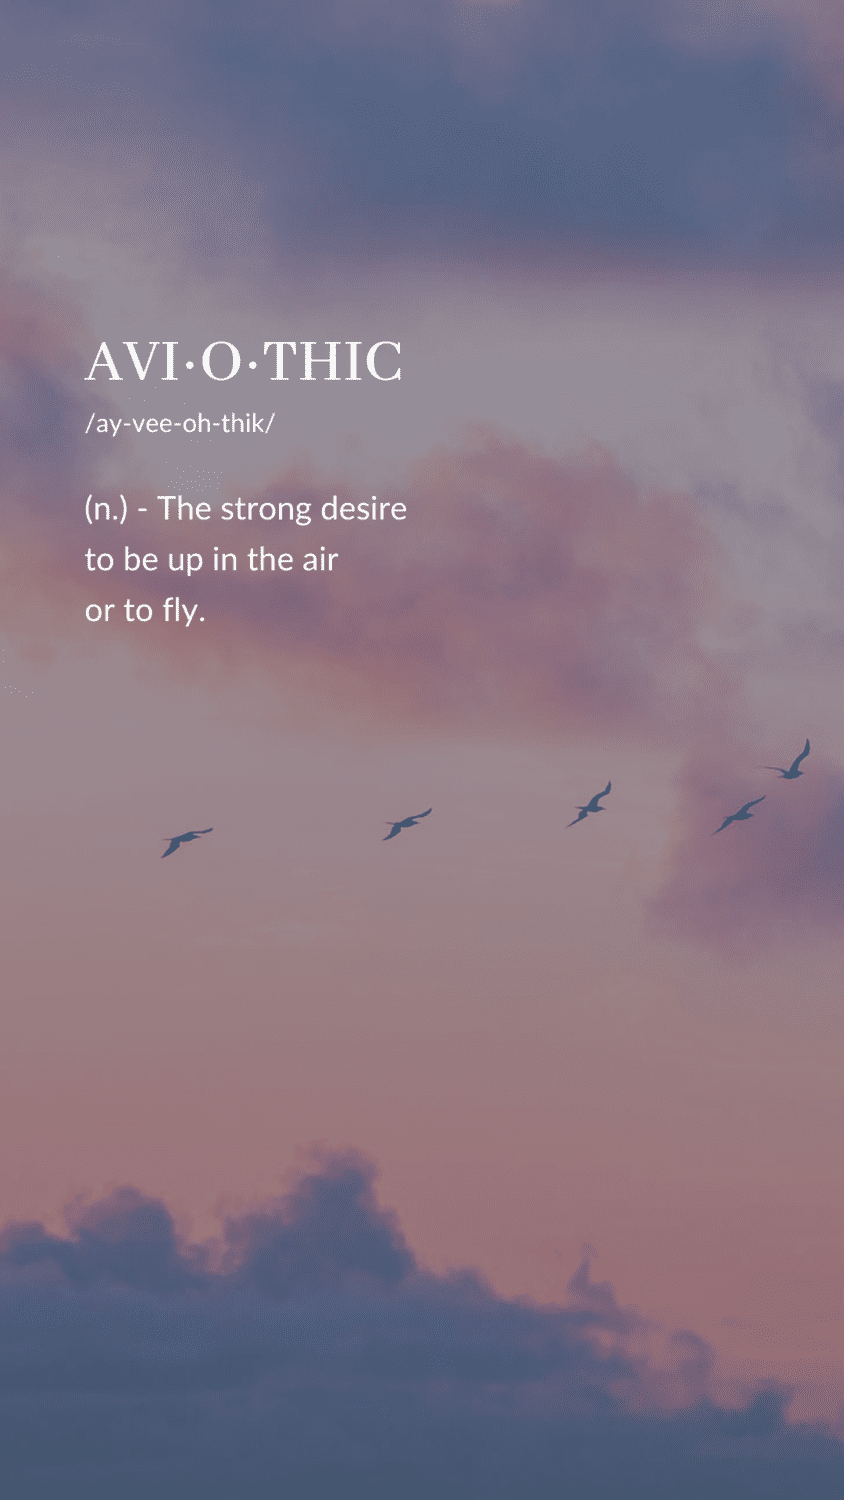 Aviothic definition wallpaper aesthetic